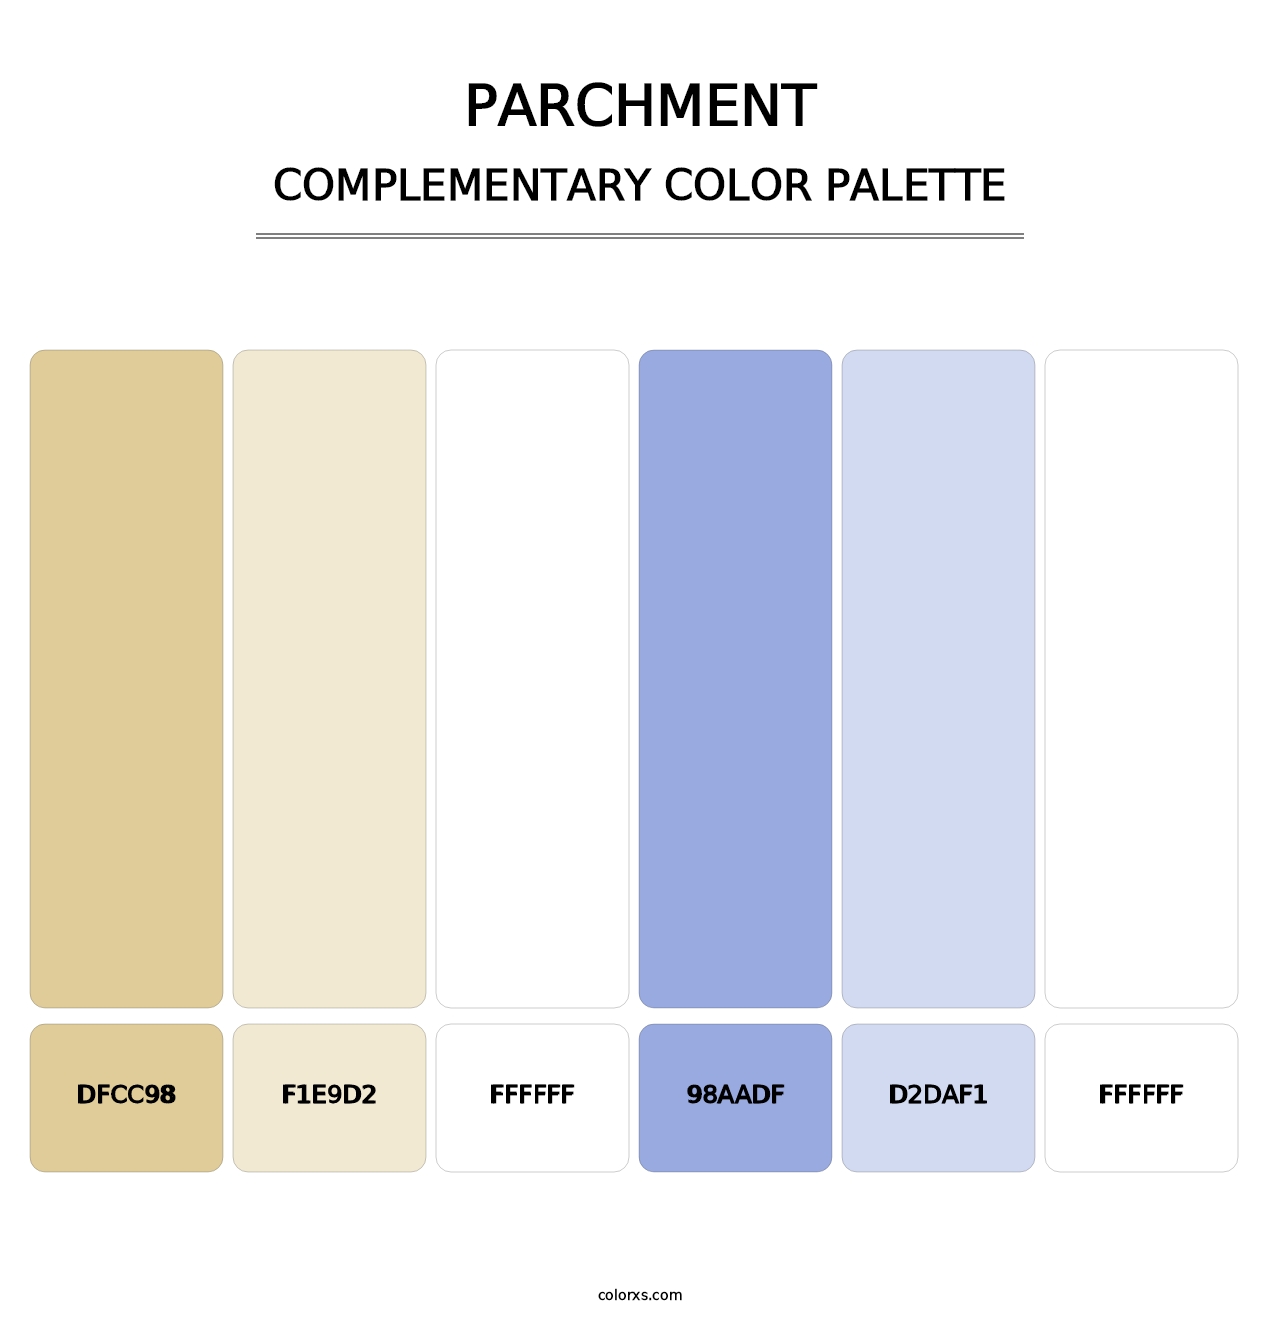 Parchment - Complementary Color Palette